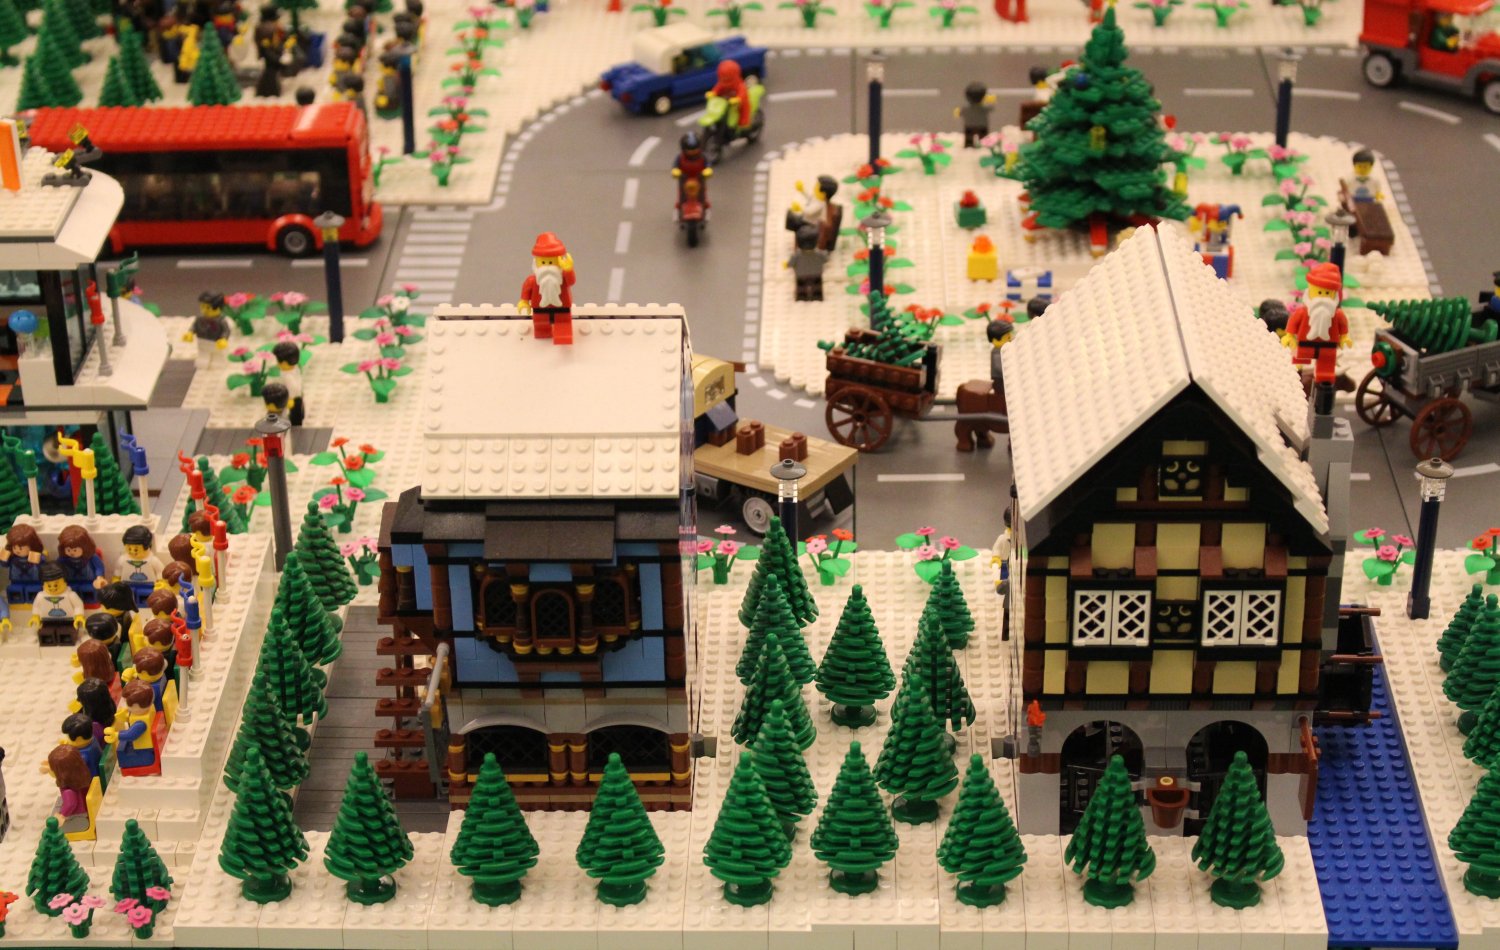 Christmas has come to Lego City